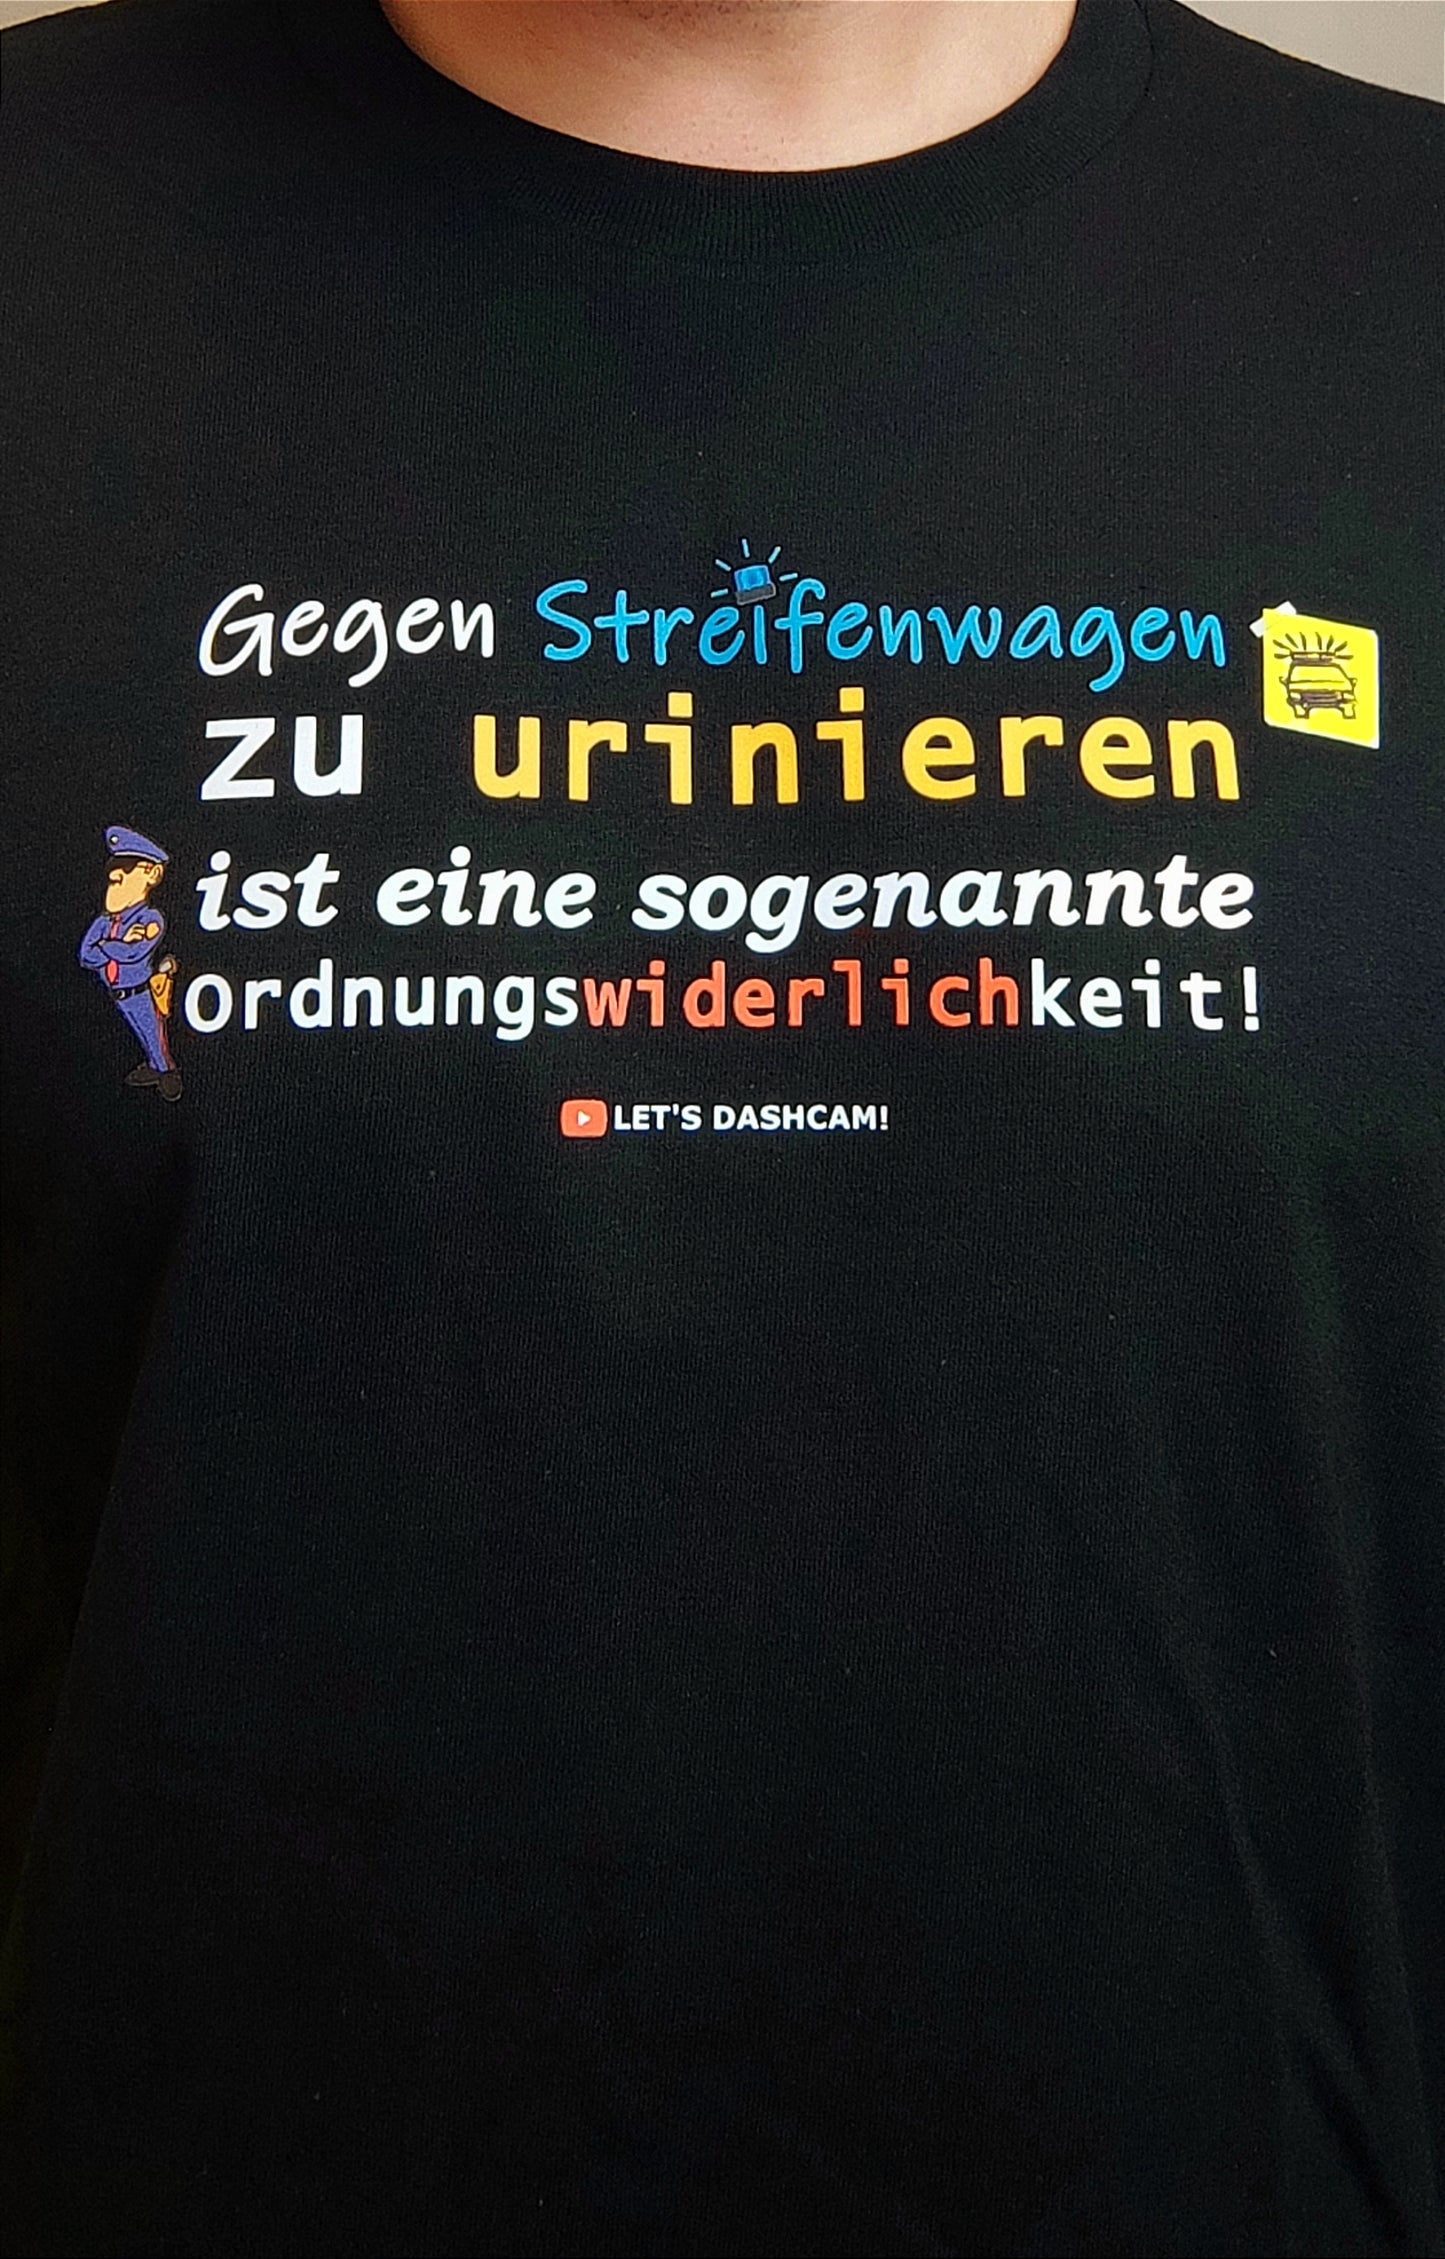 "Gegen Streifenwagen urinieren" | T-Shirt